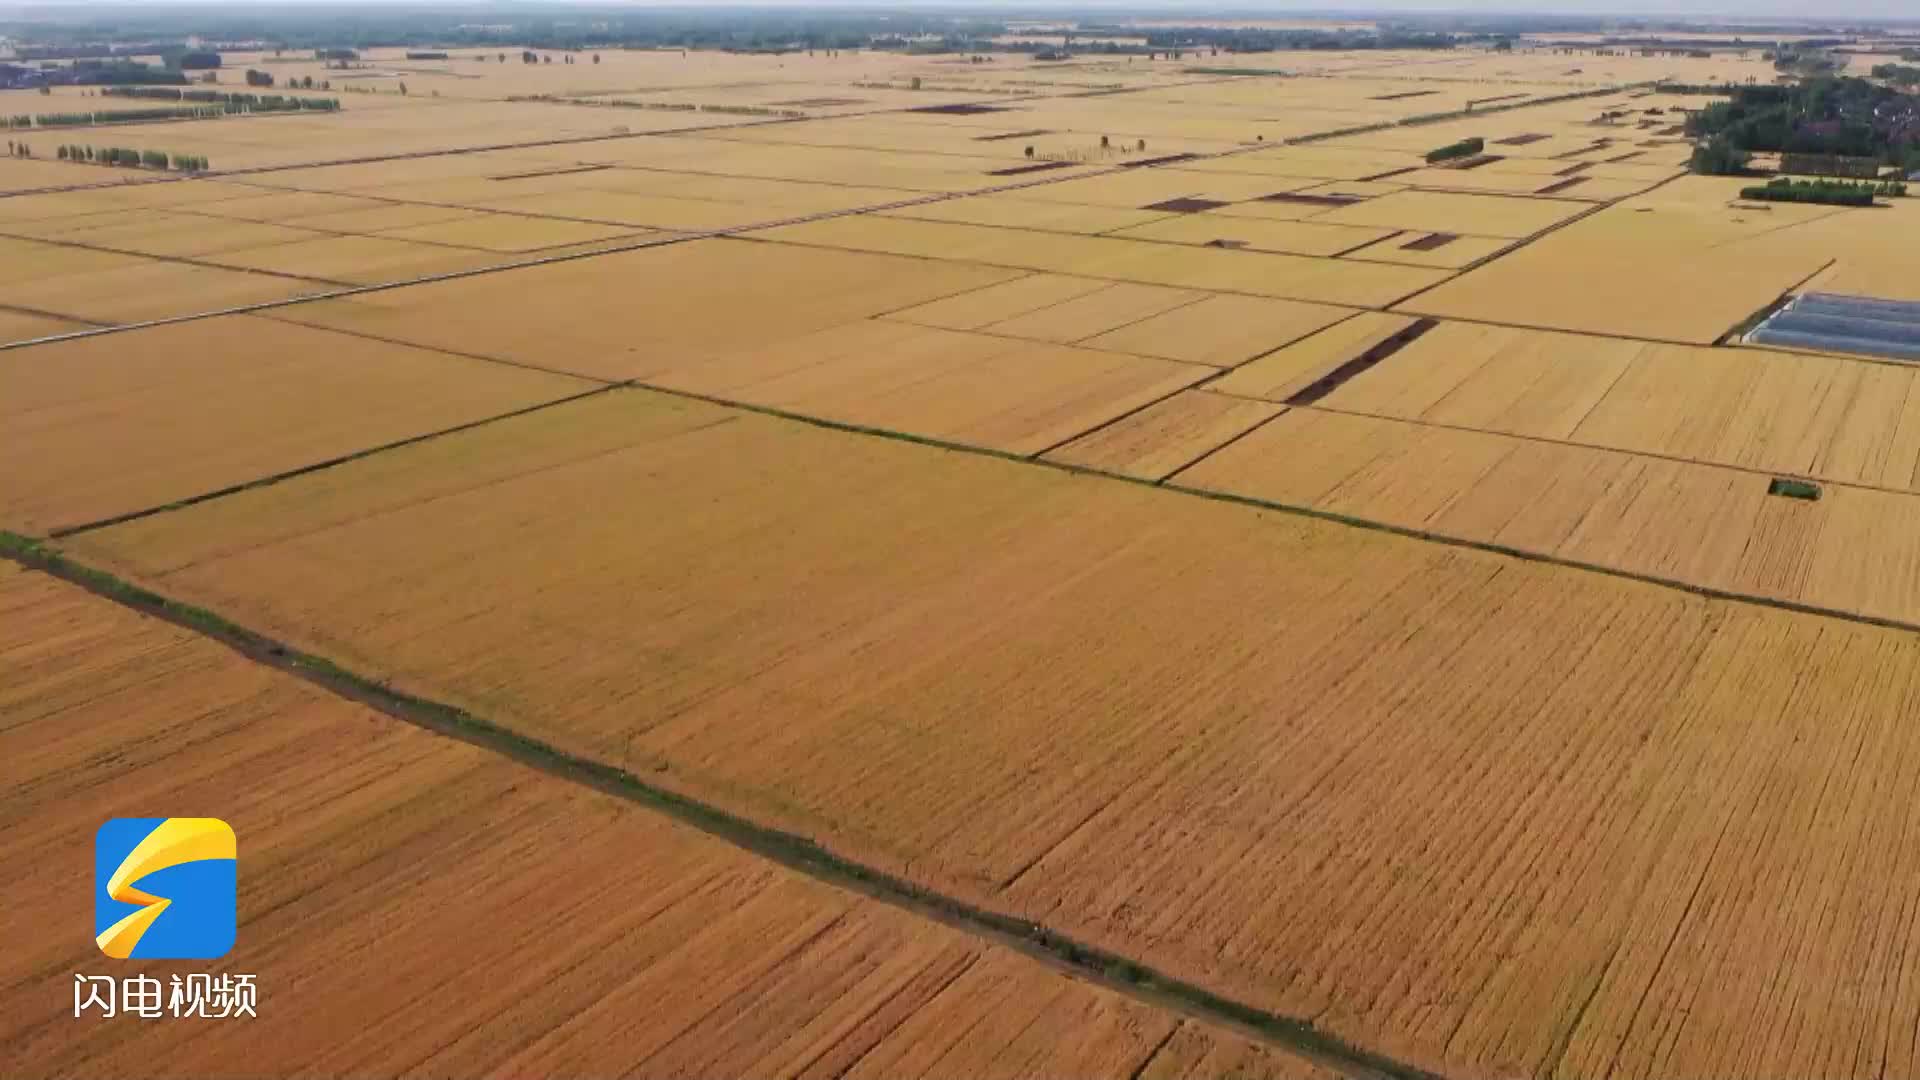 三夏时节瞰沂蒙万亩麦田 临沂436.74万亩小麦开镰收割